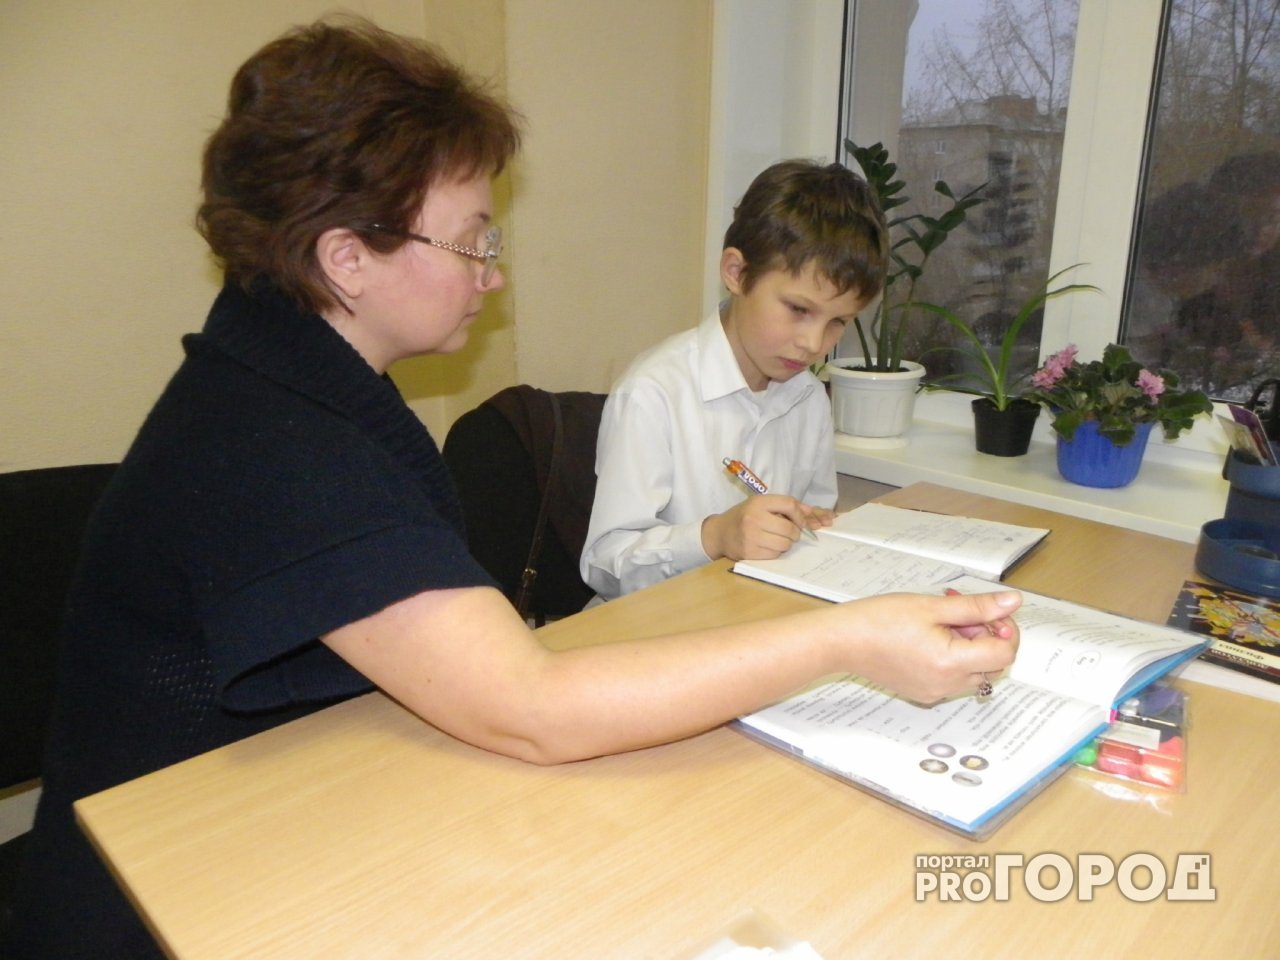 В ярославских школах и детских садах могли работать педагоги с судимостями